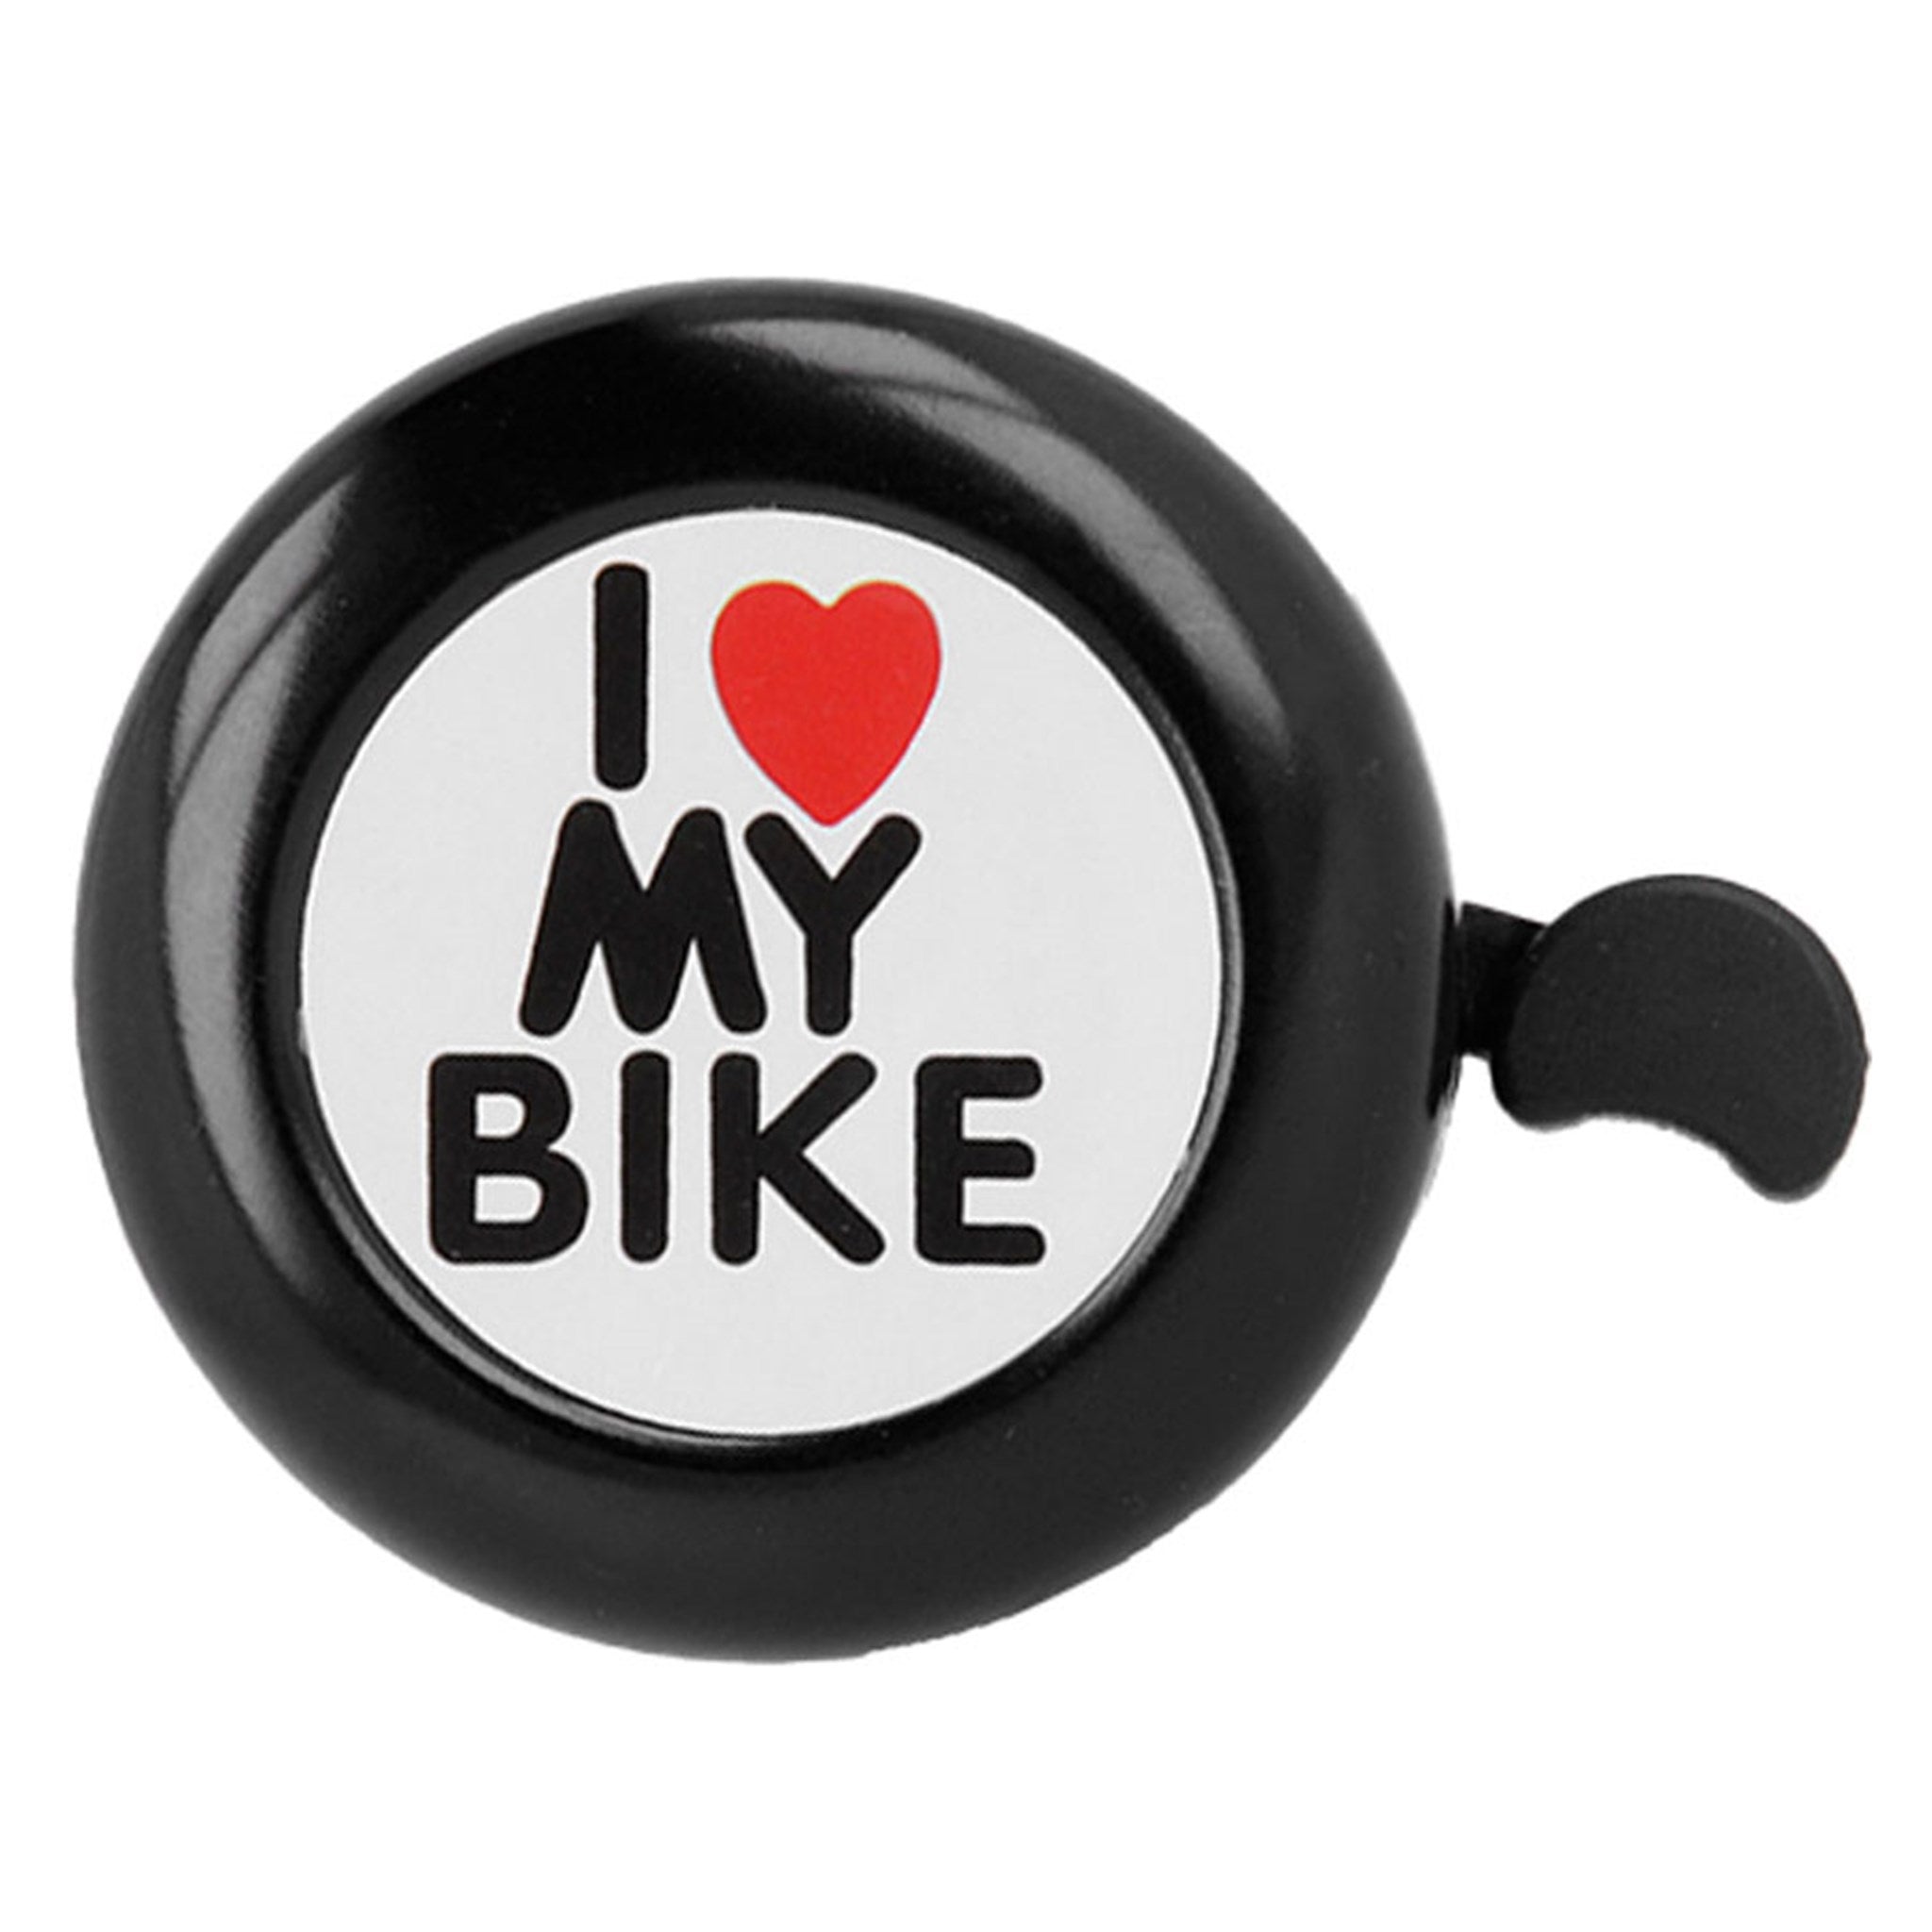 BIKE00022 Forever I Love My Bike Ringeklokken Til Cykel, Sort 01